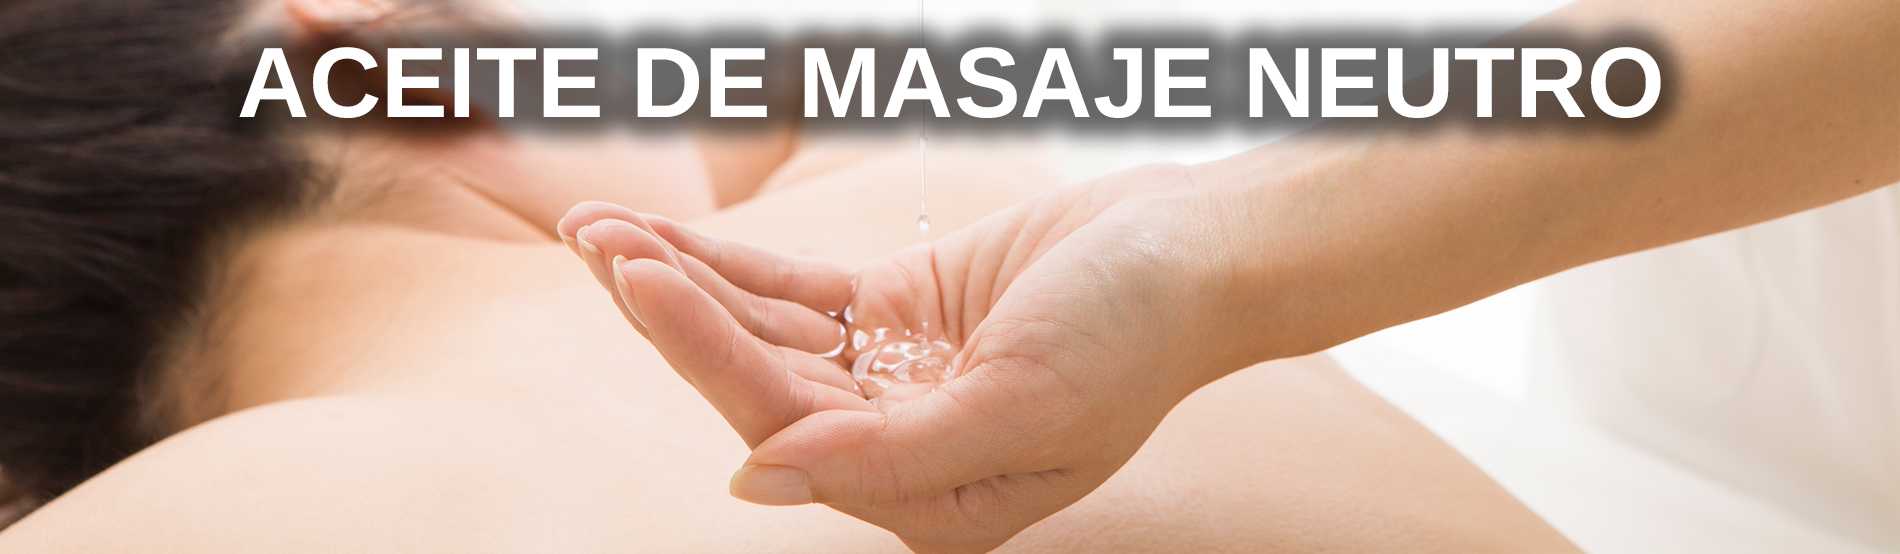 Aceite base aceite de masaje